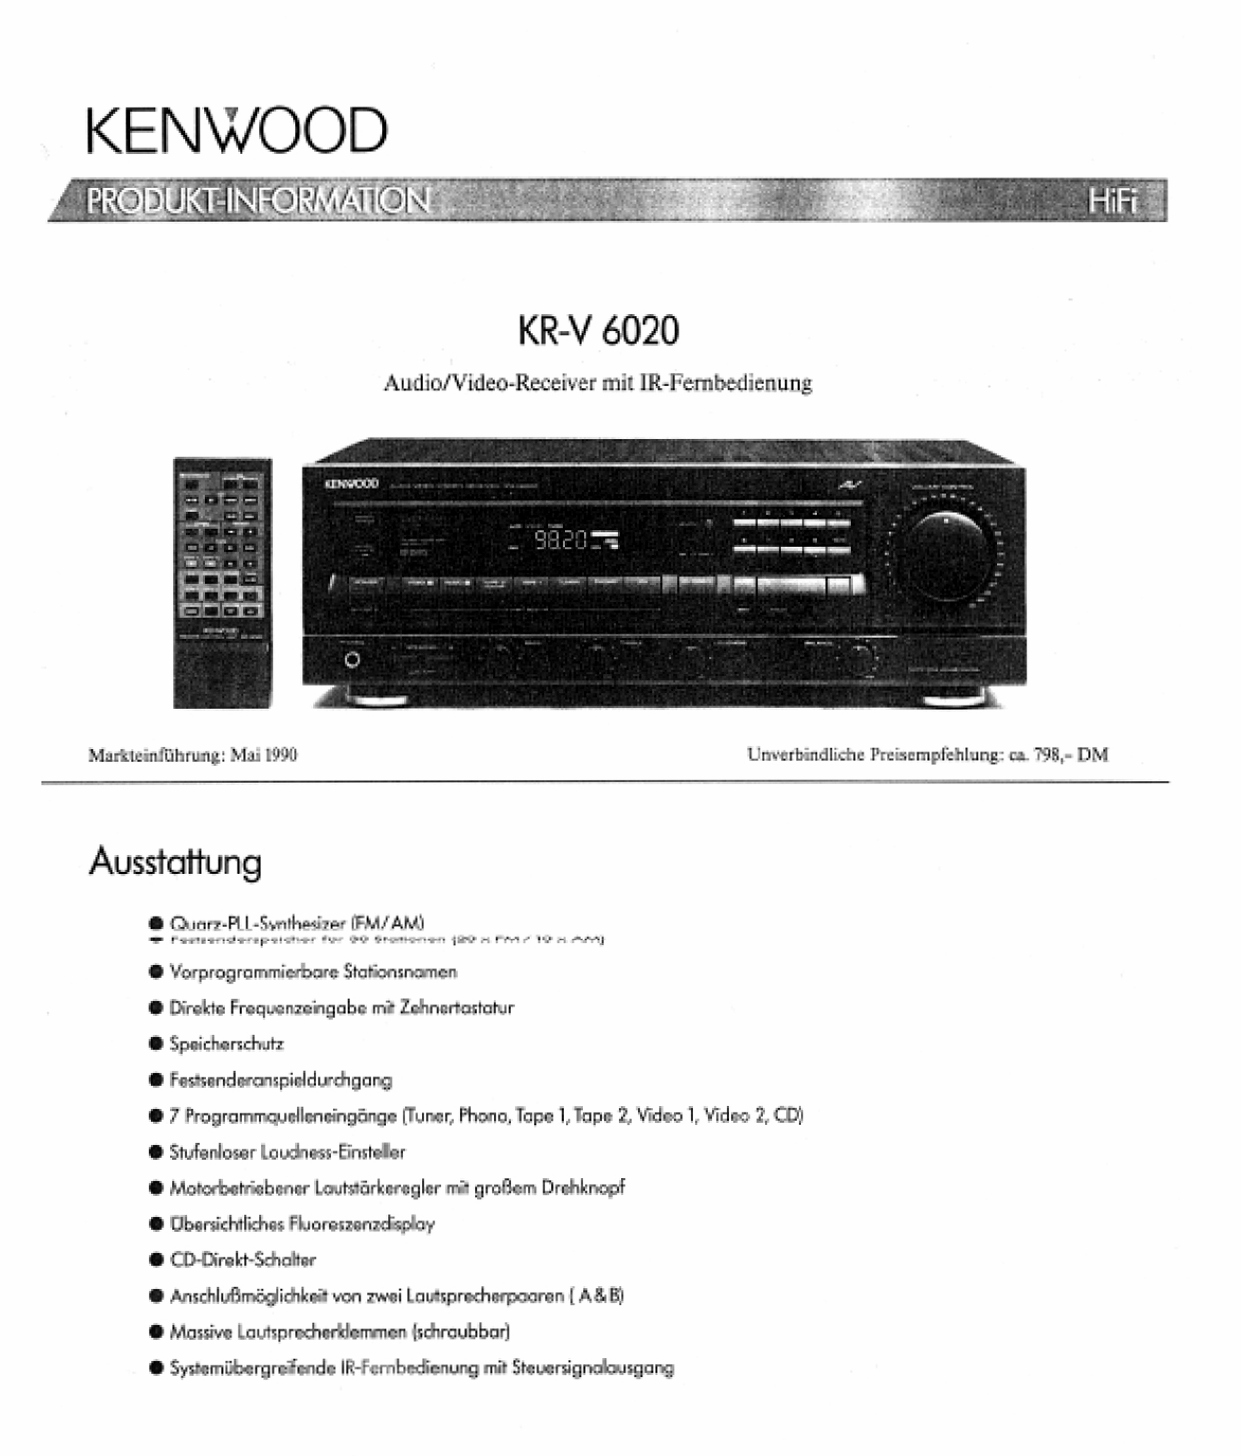 Kenwood KR-V 6020-Prospekt-1990.jpg